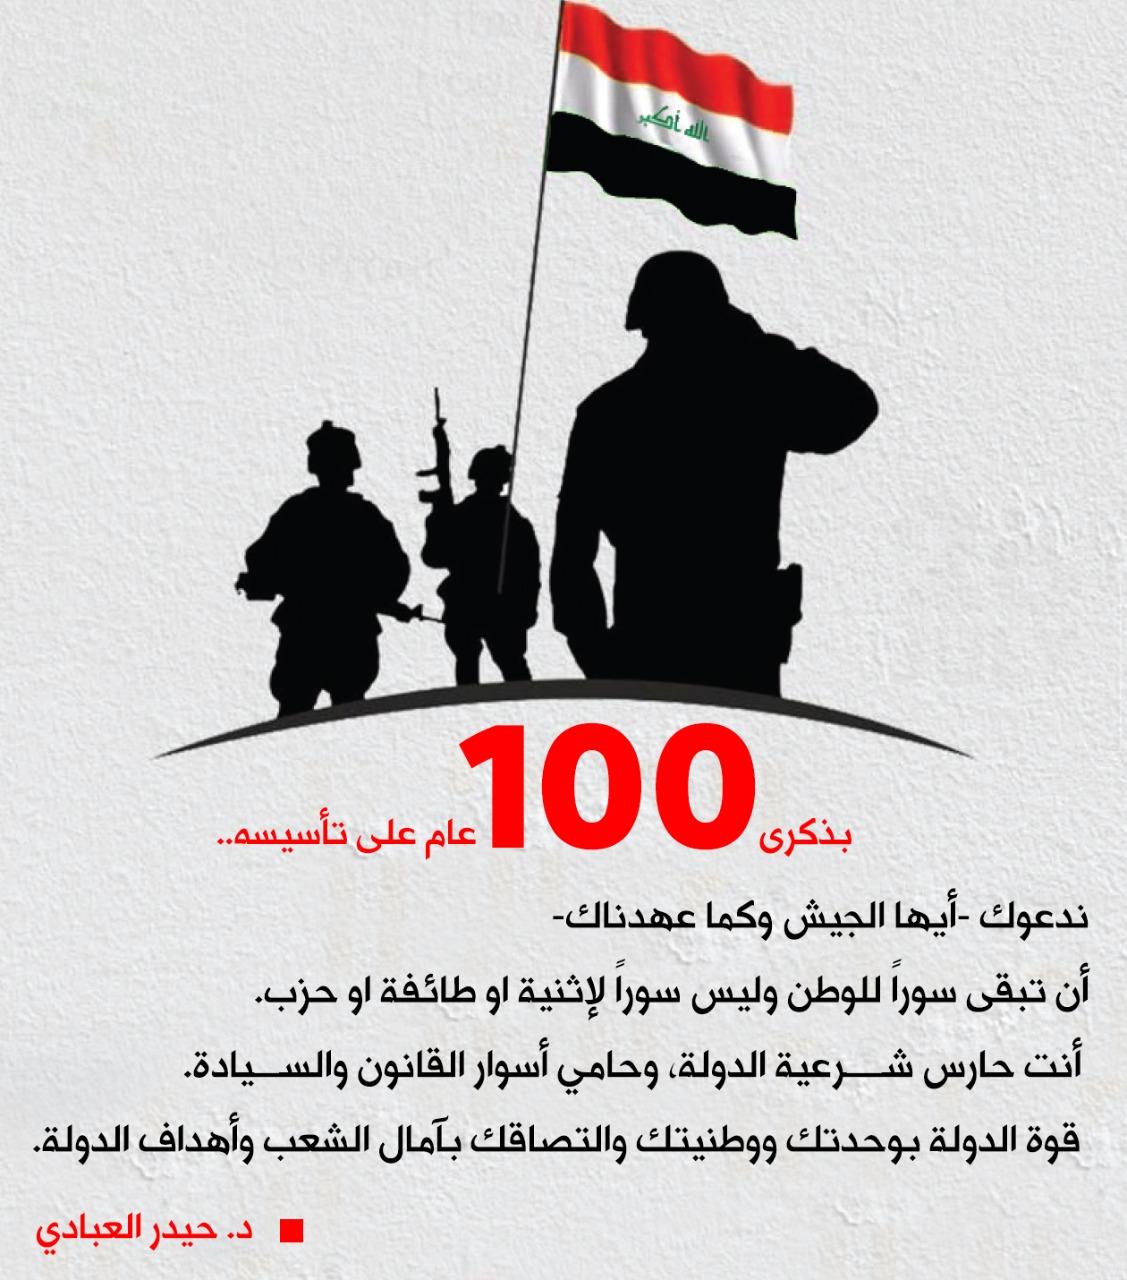 في الذكرى المائة لتأسيس الجيش العراقي الباسل